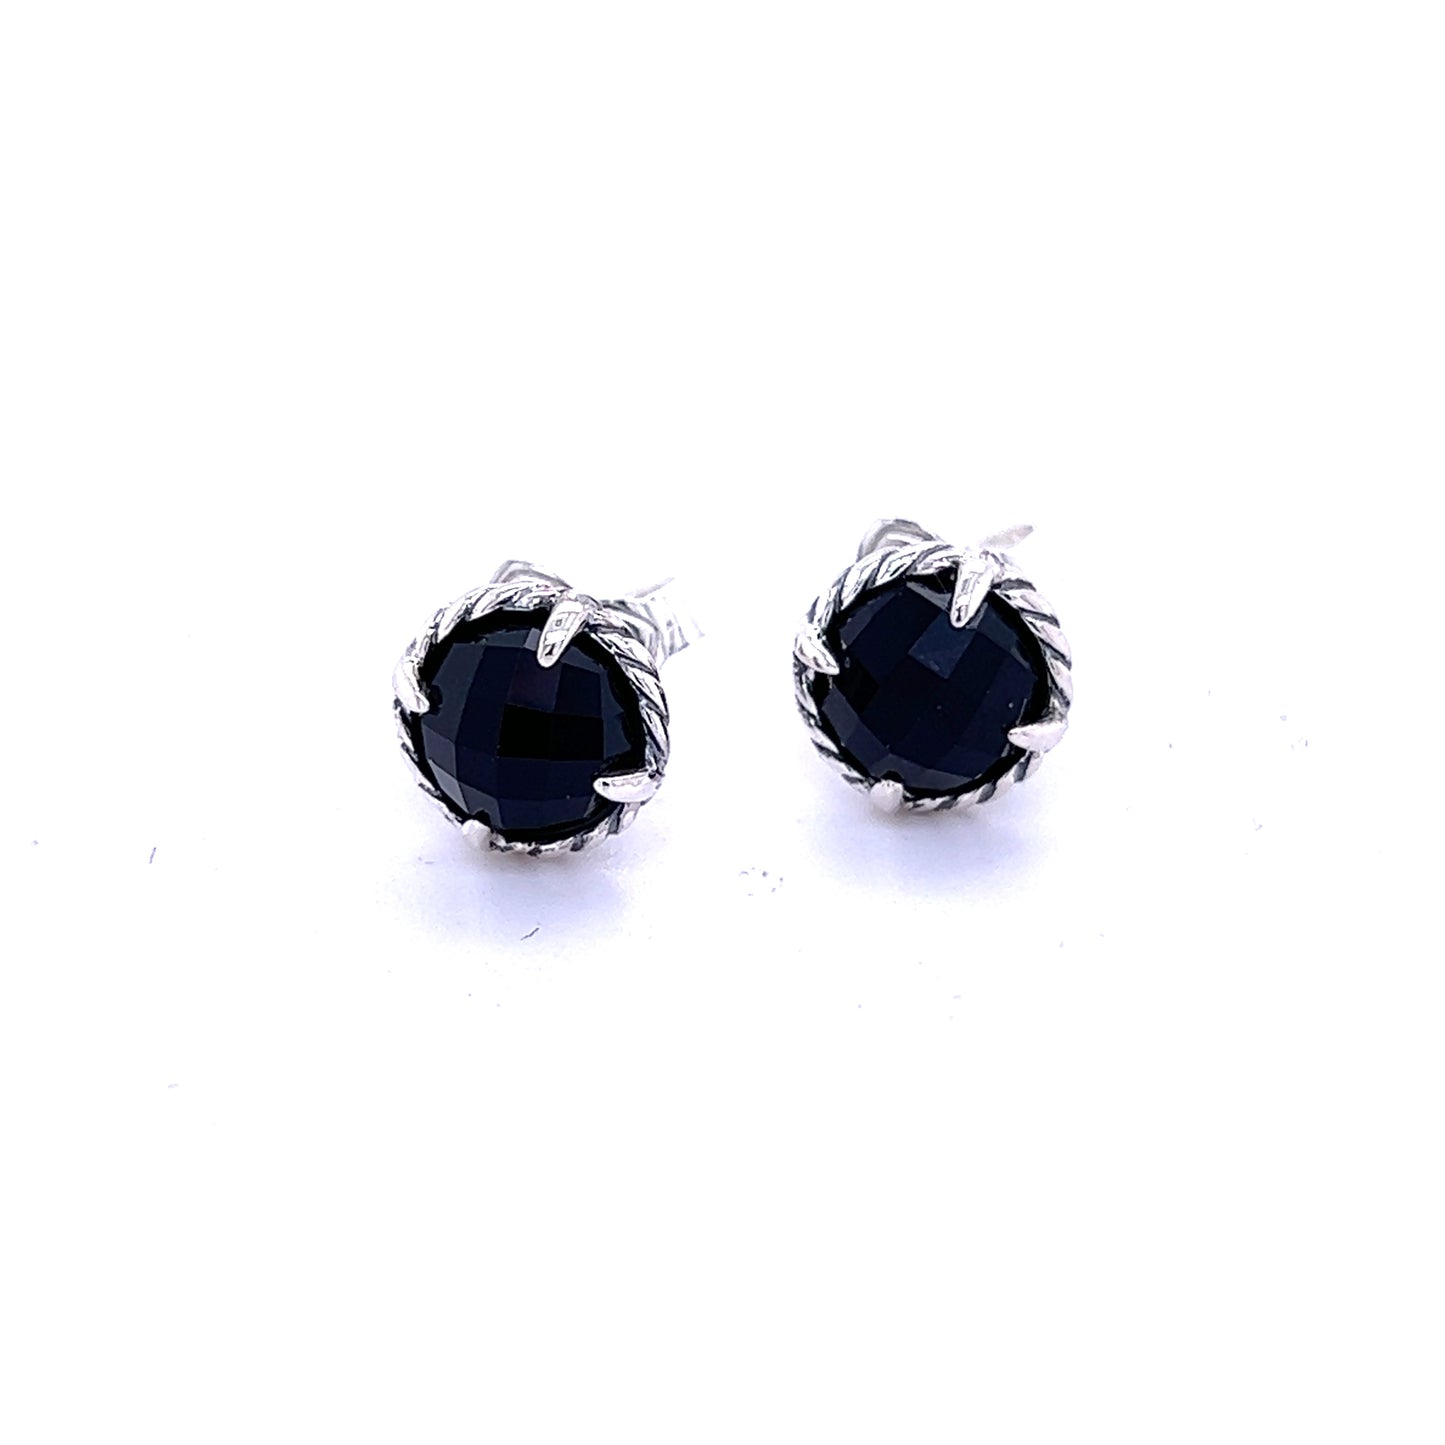 David Yurman Authentic Estate Black Onyx Chantelaine Stud Earrings Silver DY355 - Certified Fine Jewelry